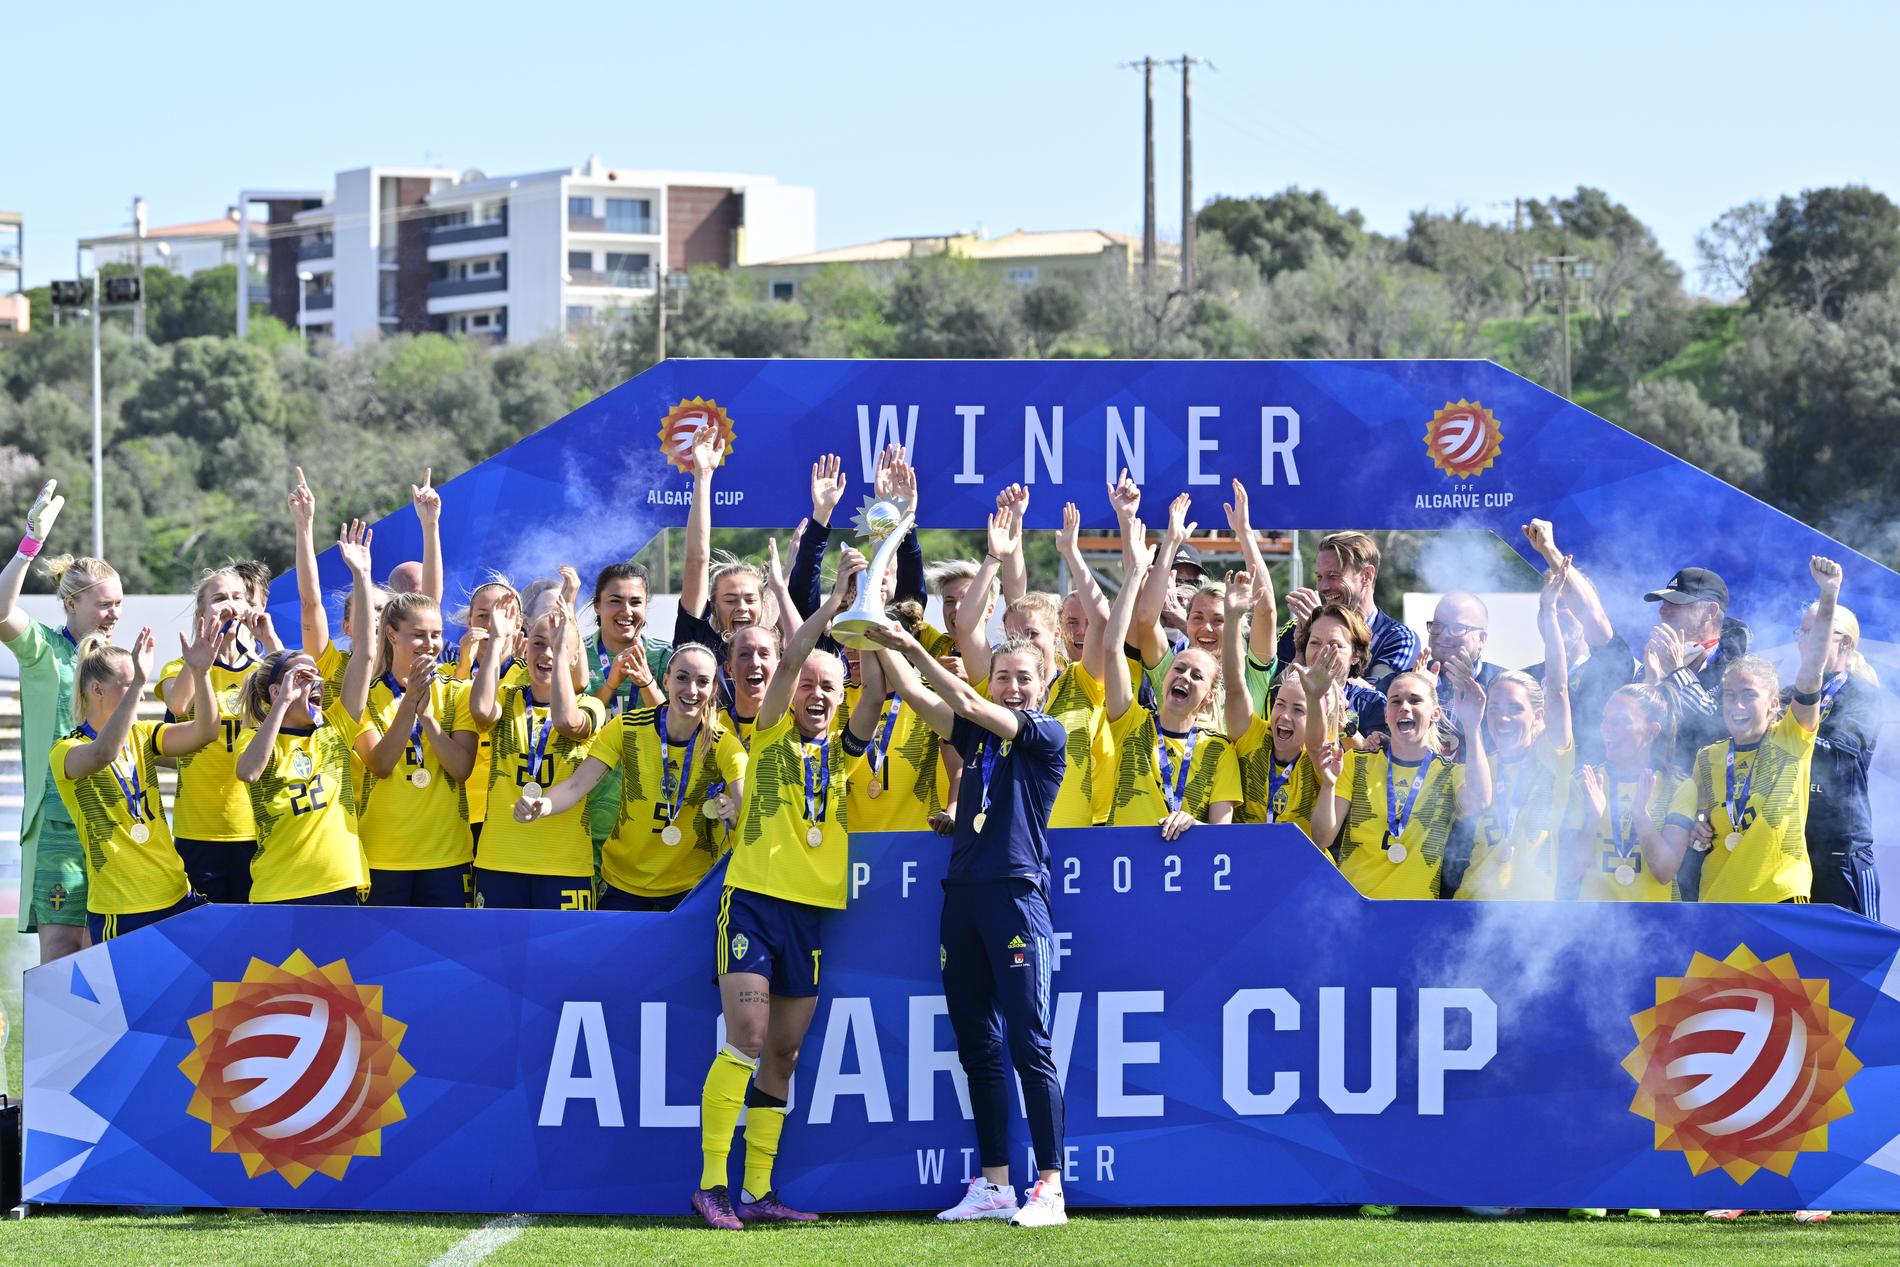 Det svenska landslaget firar segern i Algarve Cup efter finalvinst mot Italien på Estádio Municipal de Lagos.